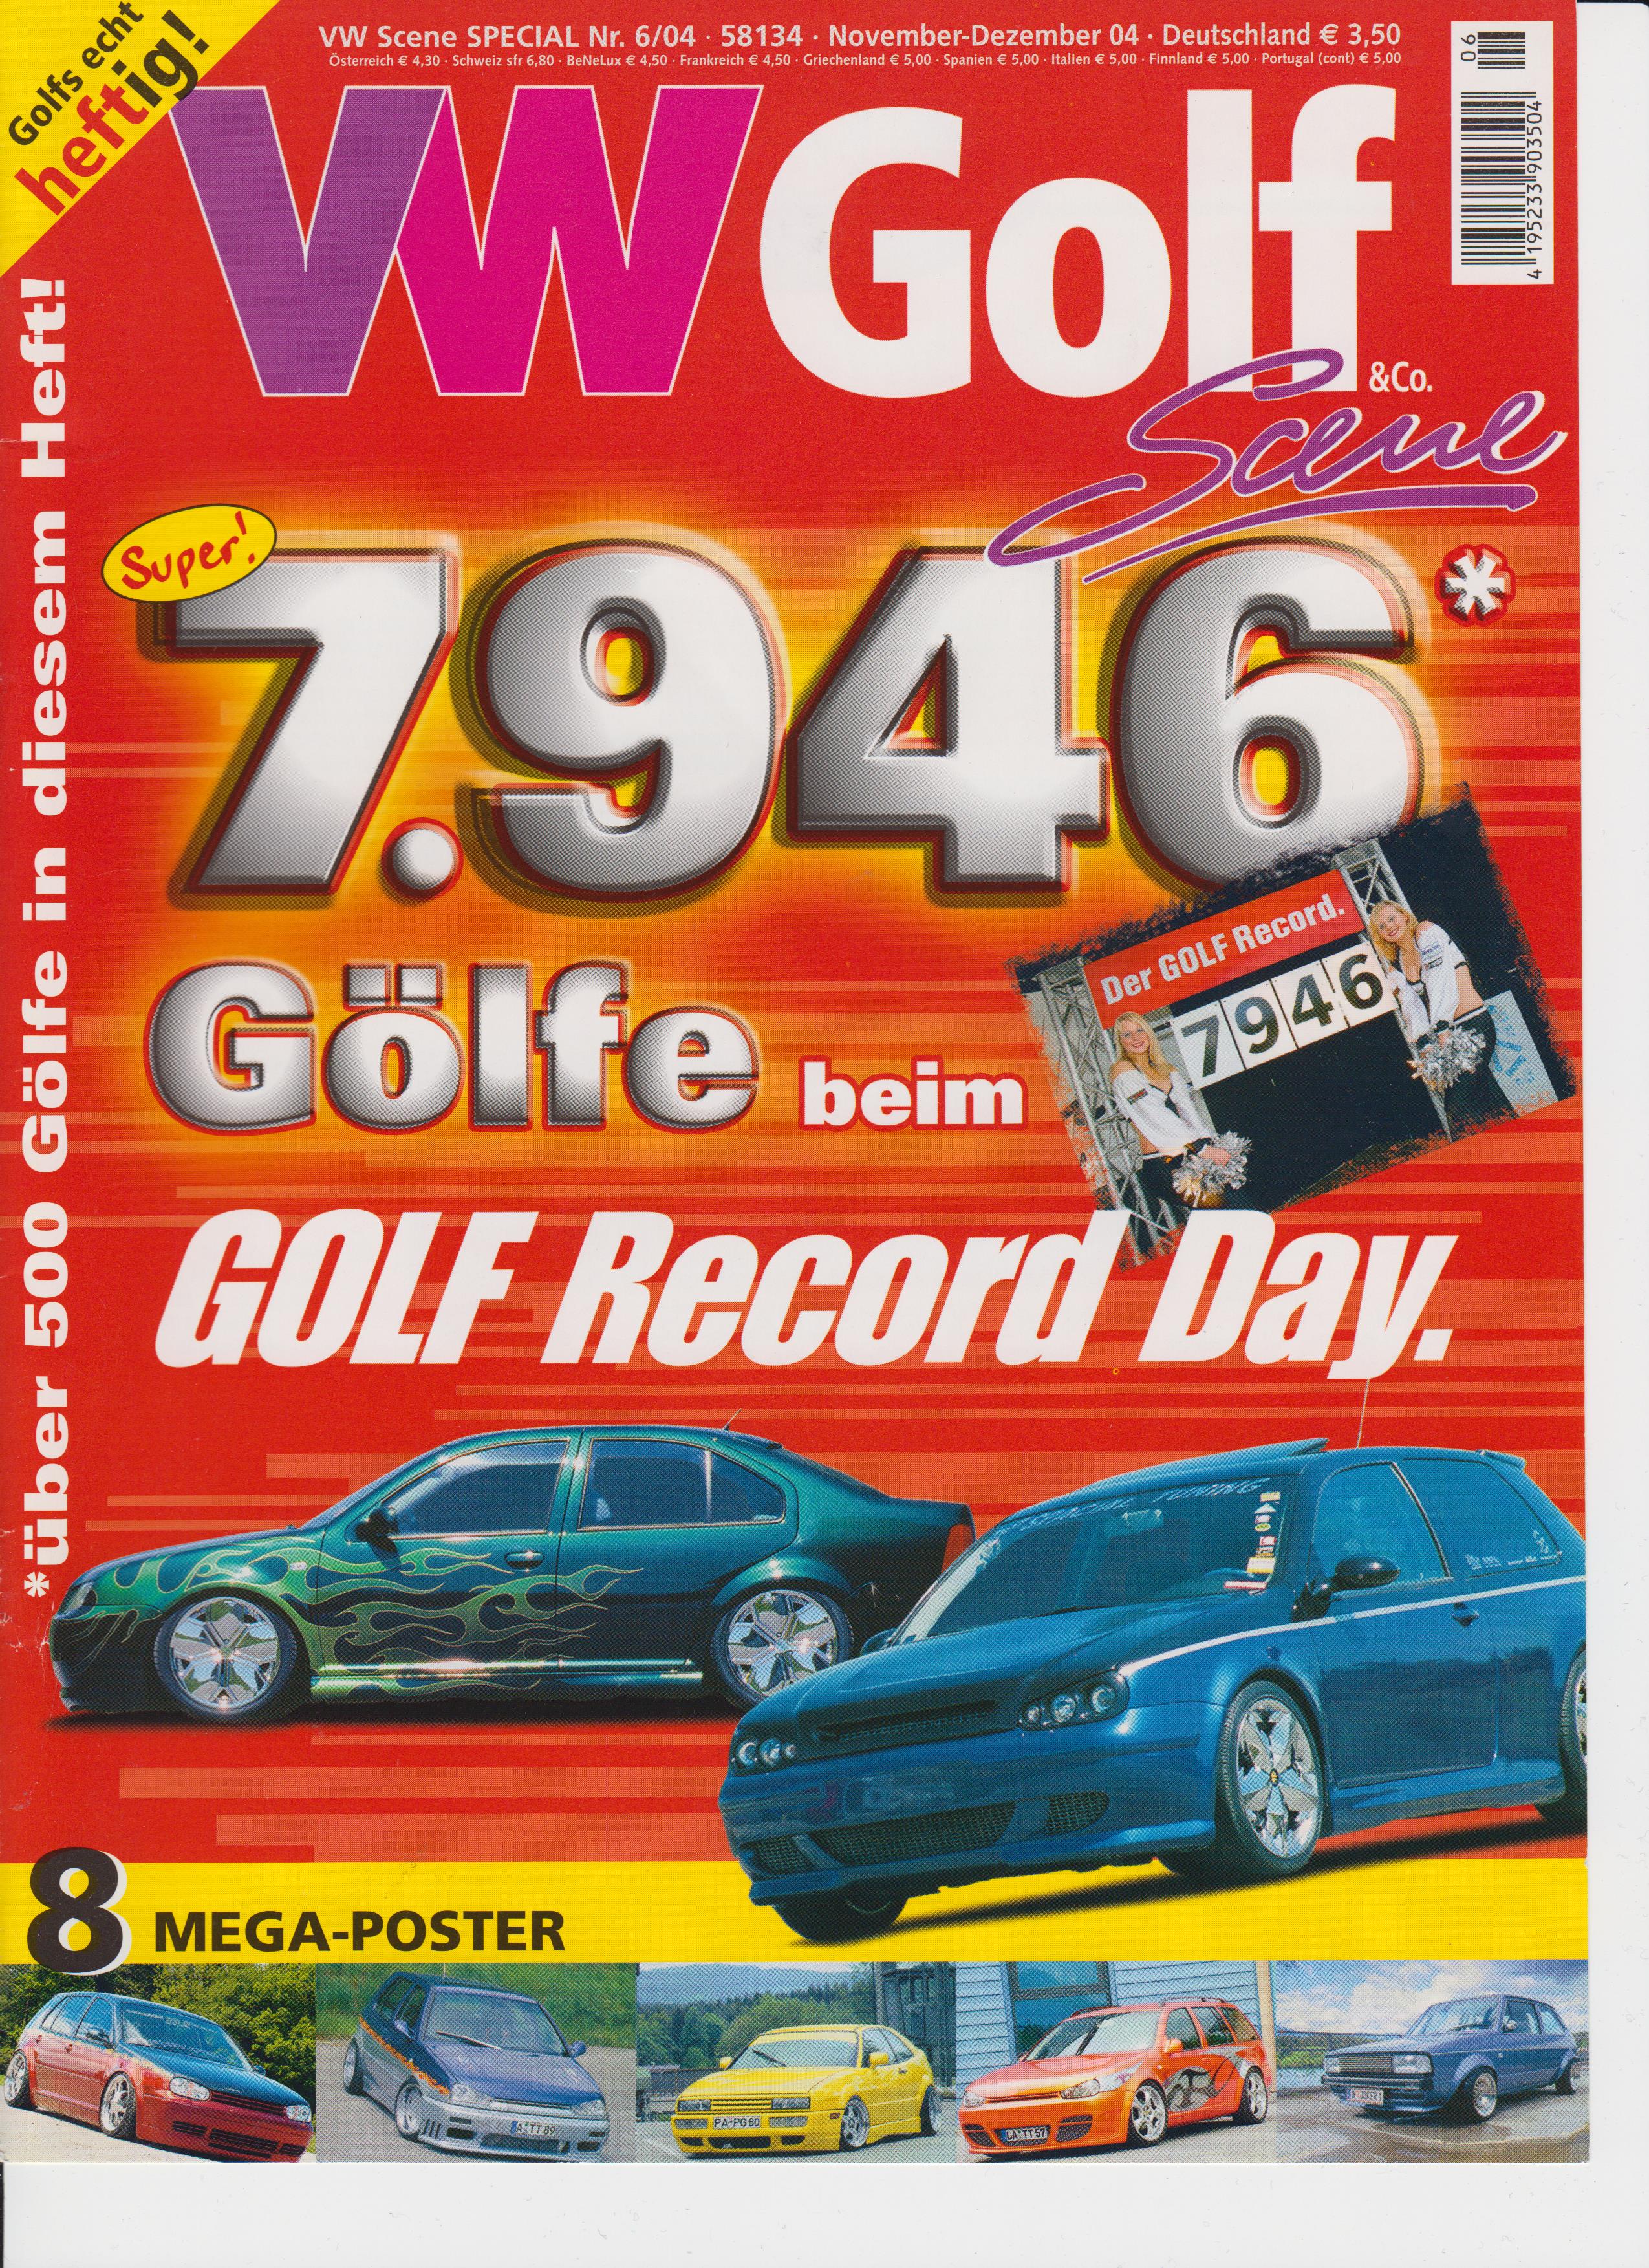 Trade journal VW Golf 06 2004